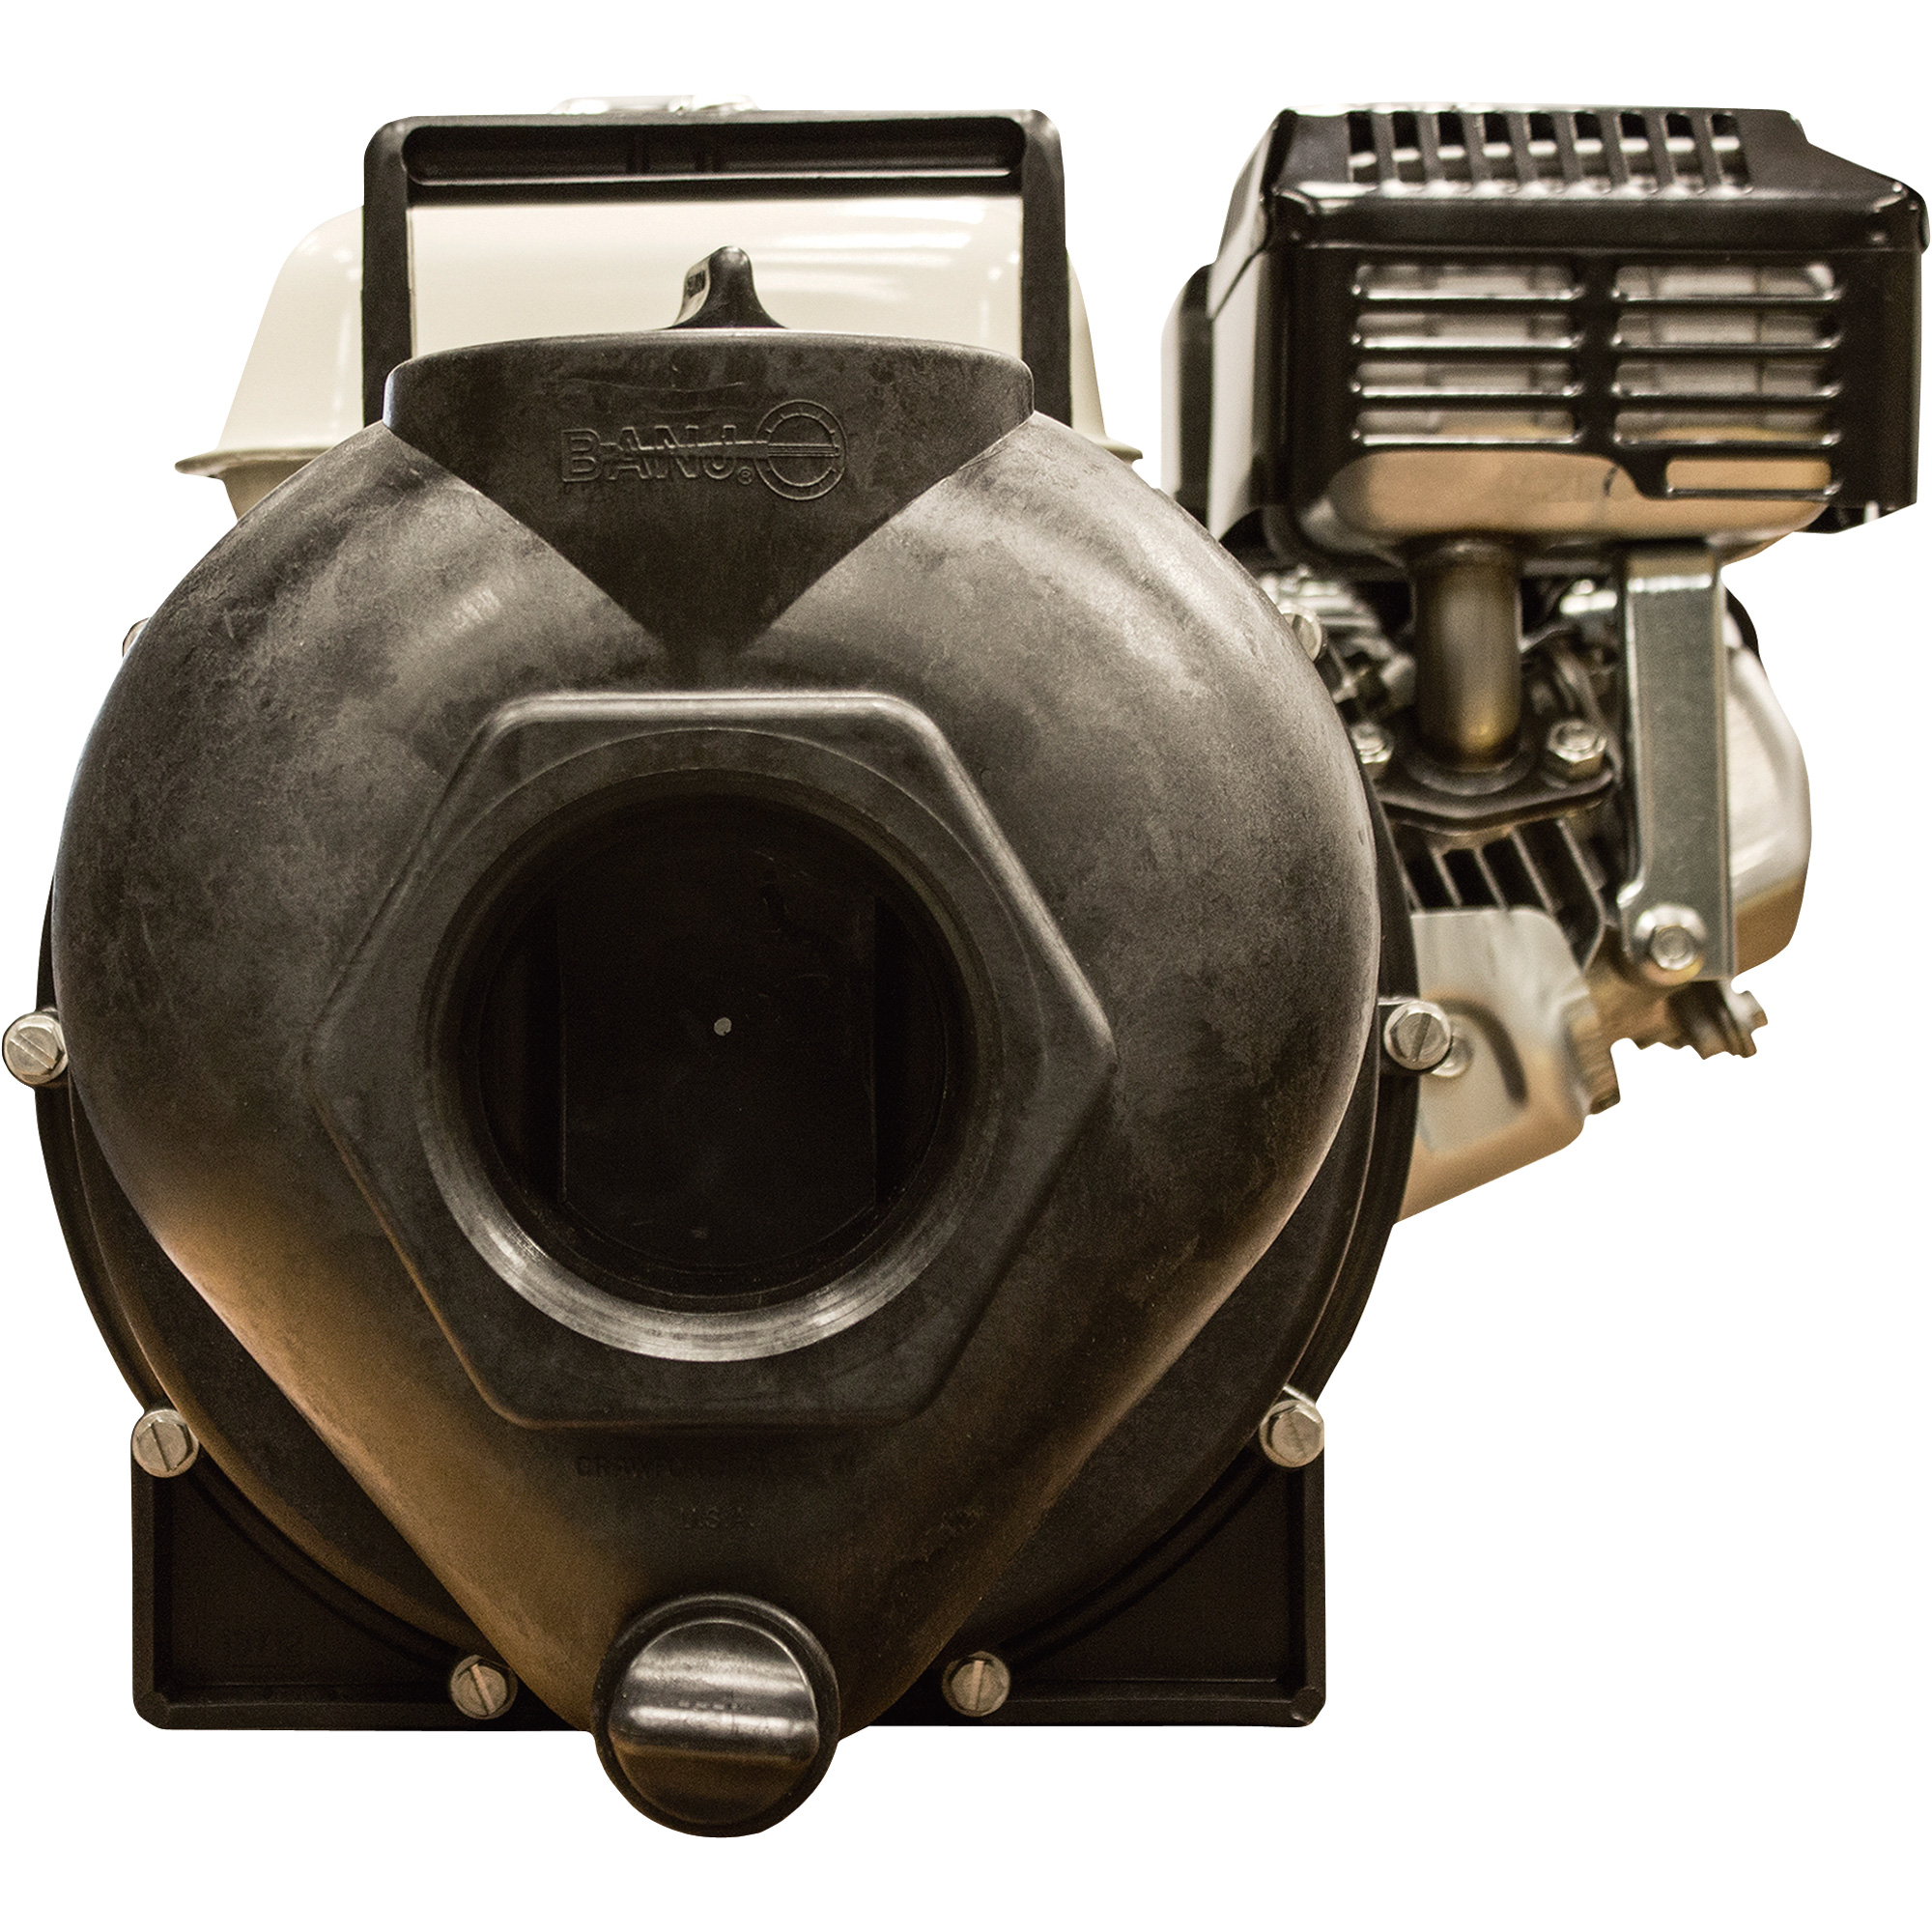 Banjo Self-Priming Transfer Chemical Water Pump â 17,400 GPH, 3Inch Ports, Honda Engine with Electric Start, Model 300PH-6-200E.BAN